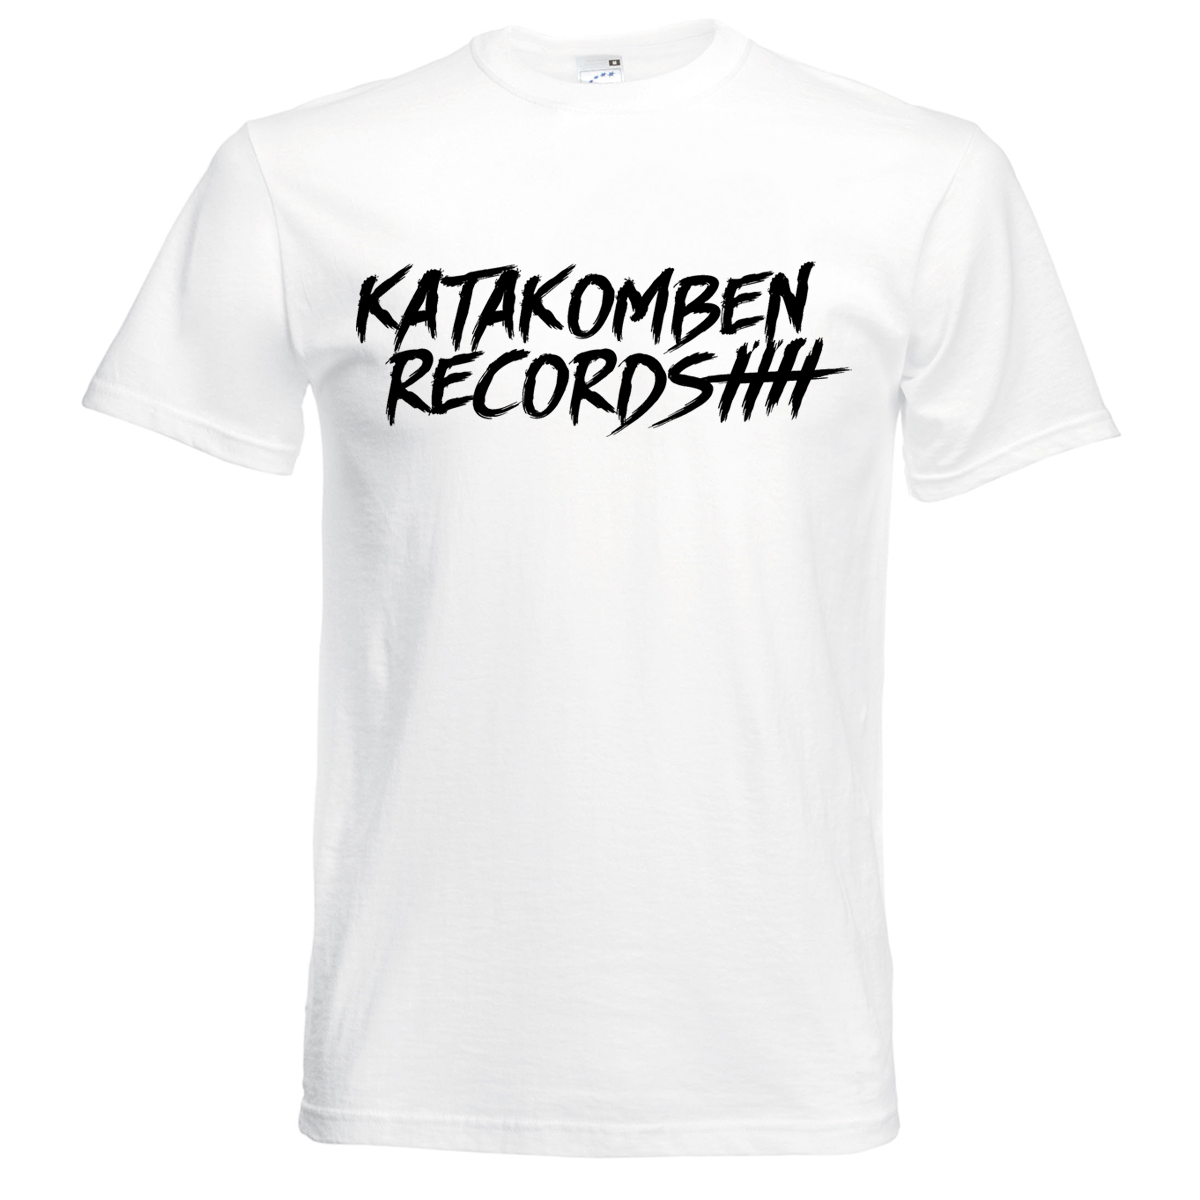 Bild von KATAKOMBEN RECORDS - SHIRT (weiß)